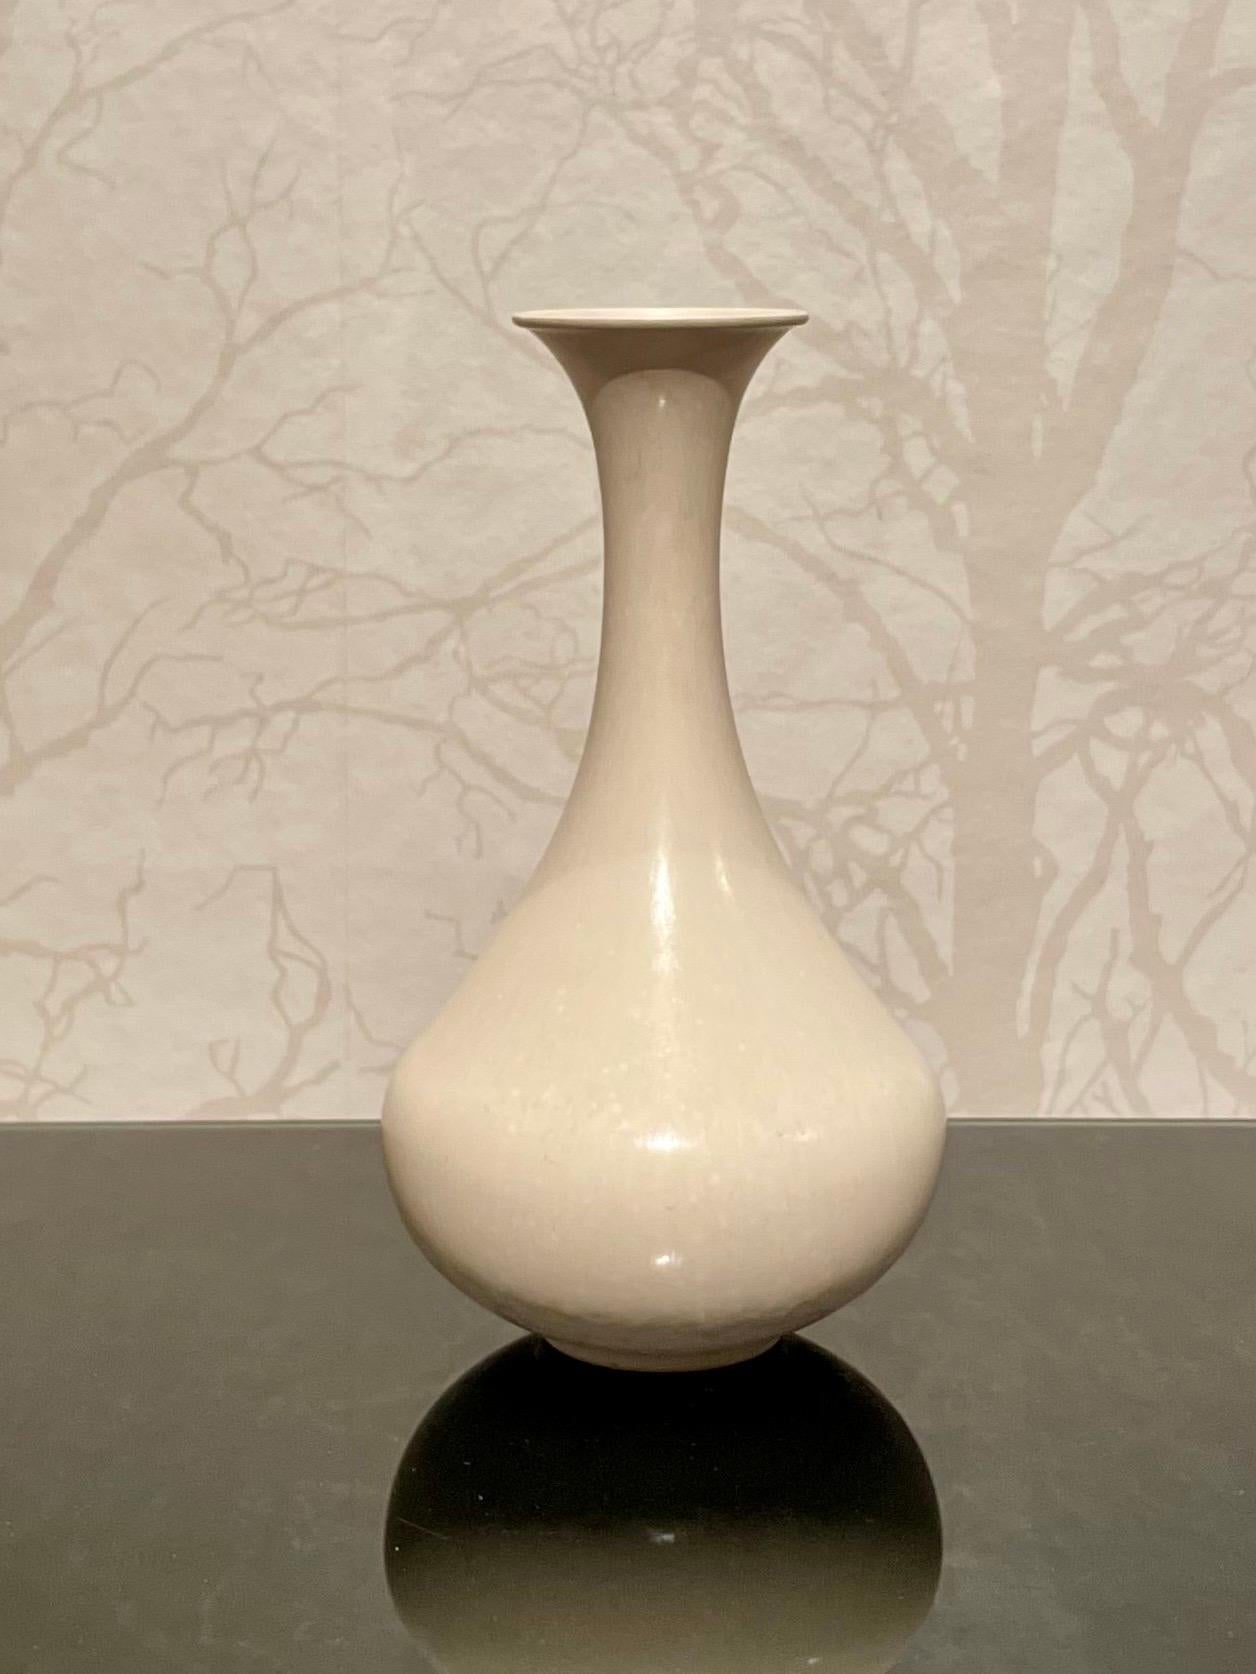 Il s'agit d'un vase en céramique blanche émaillée coquille d'œuf des années 1960, réalisé par Gunnar Nylund pour Rörstrand. 
Il se présente sous une forme féminine élégante et une surface sobre en coquille d'œuf blanc émaillé mat soyeux. 
La forme